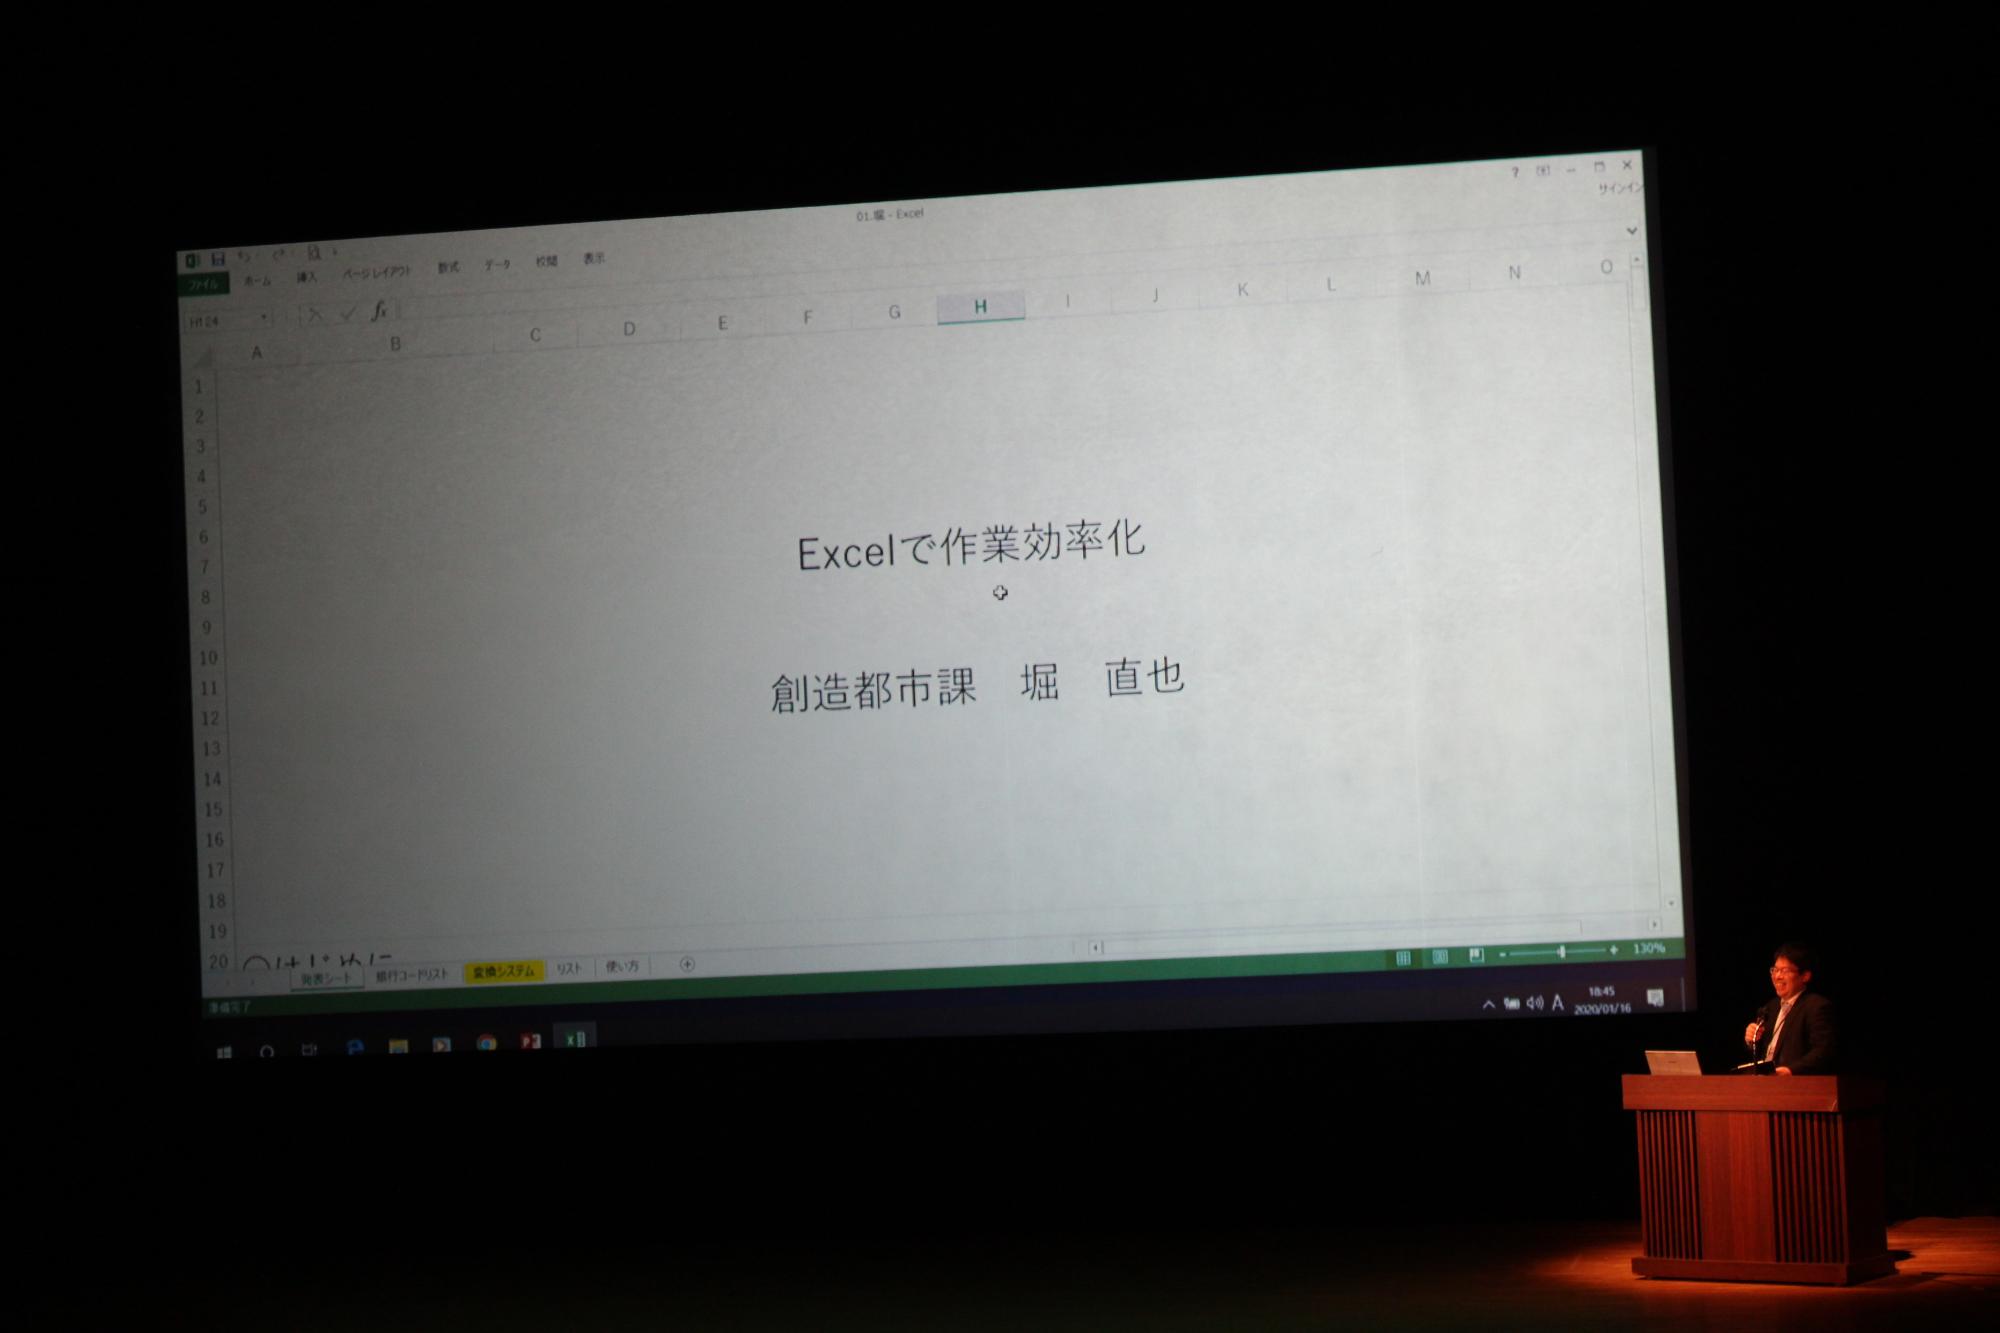 「Excelで作業効率化 」と書かれたスライドと発表者の堀直也さんが説明をしている様子